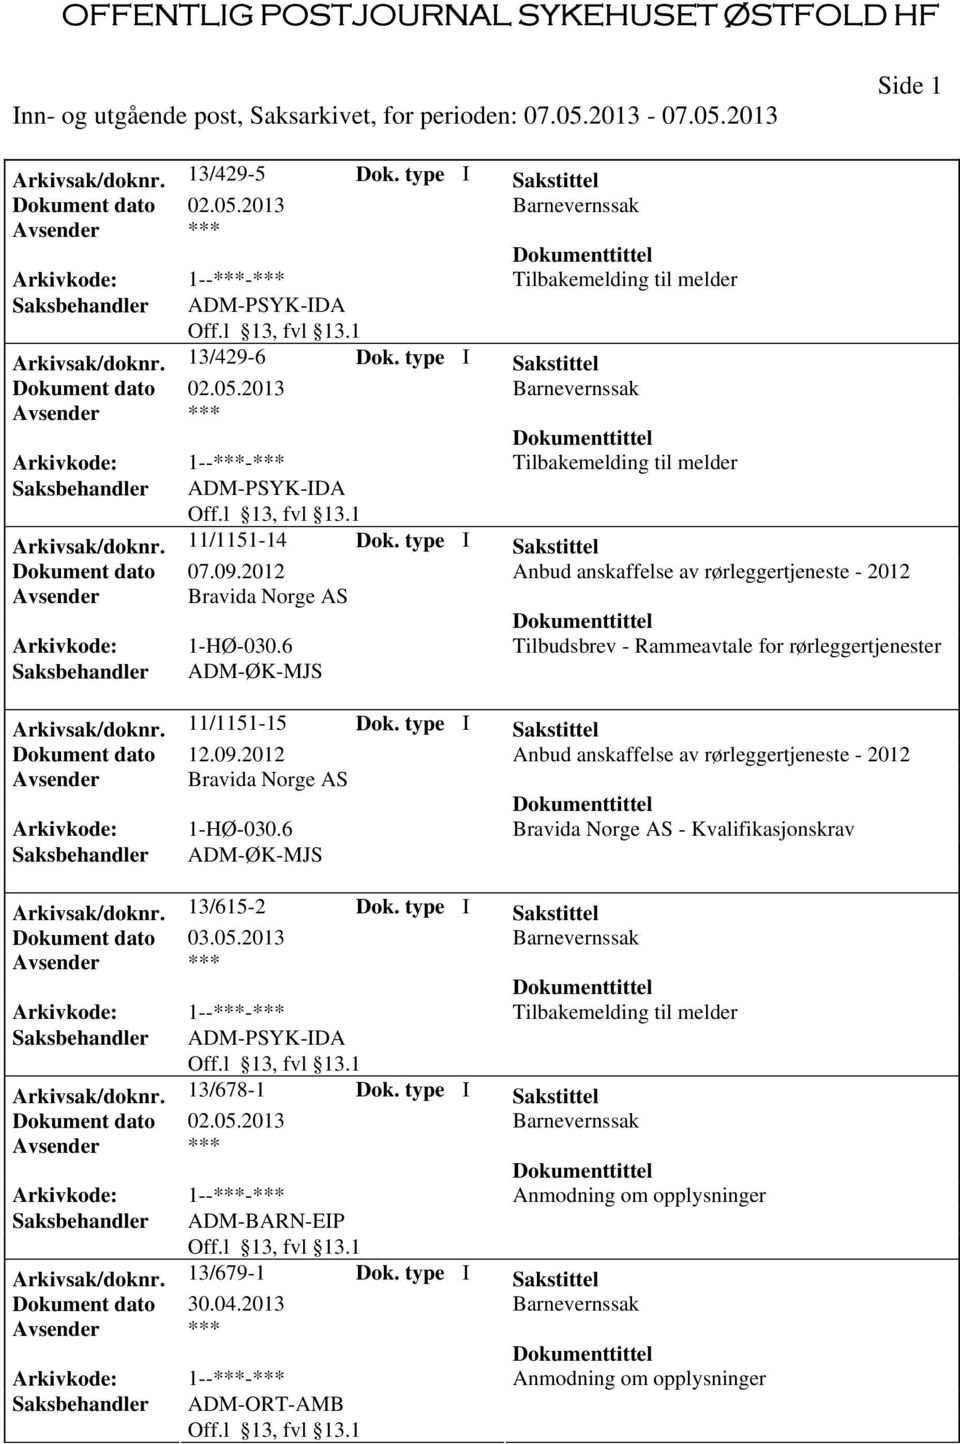 2012 Anbud anskaffelse av rørleggertjeneste - 2012 Avsender Bravida Norge AS Arkivkode: 1-HØ-030.6 Tilbudsbrev - Rammeavtale for rørleggertjenester Saksbehandler ADM-ØK-MJS Arkivsak/doknr.